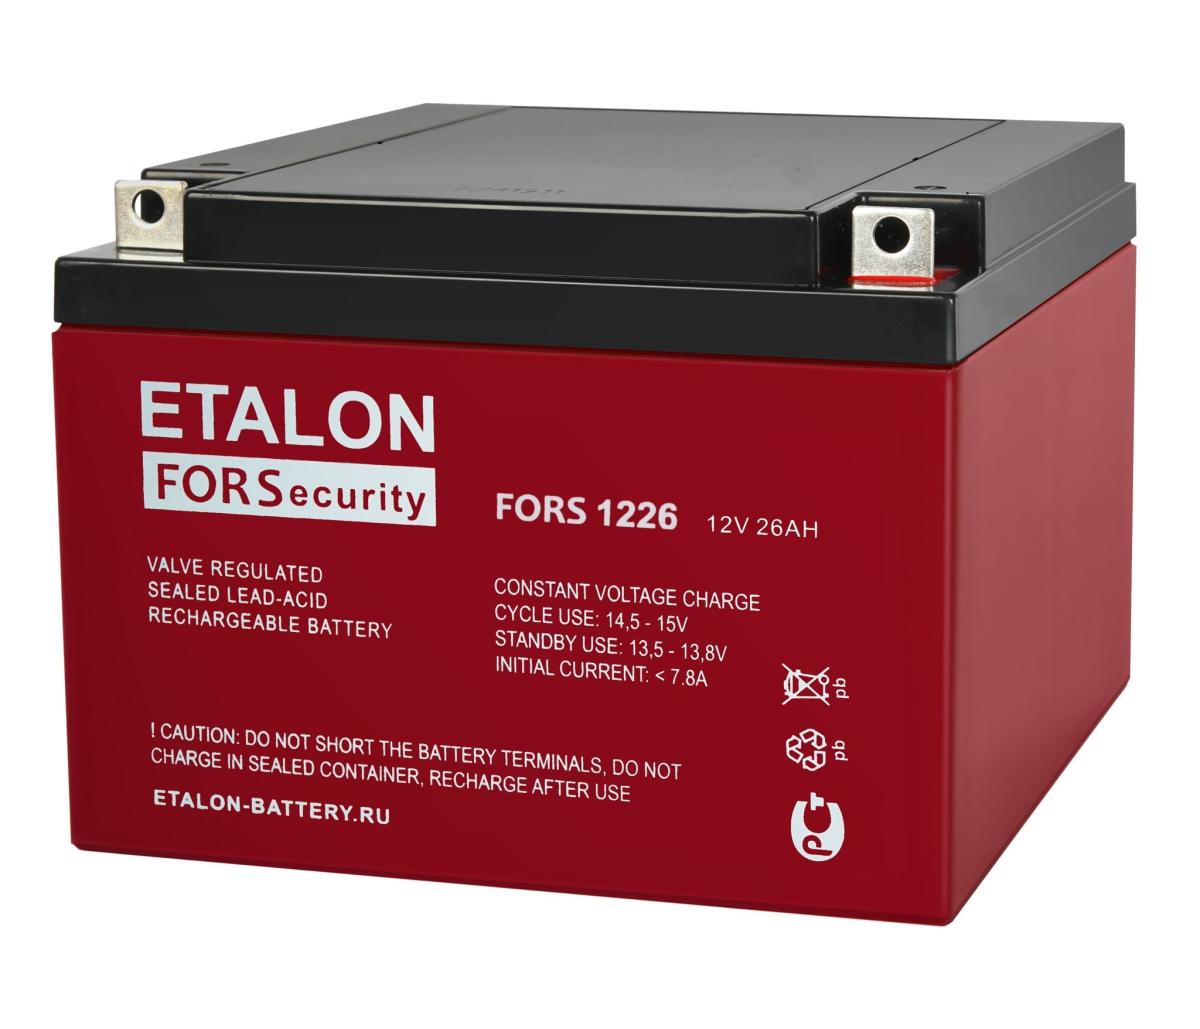 ETALON FORS 1226 Аккумулятор герметичный свинцово-кислотный